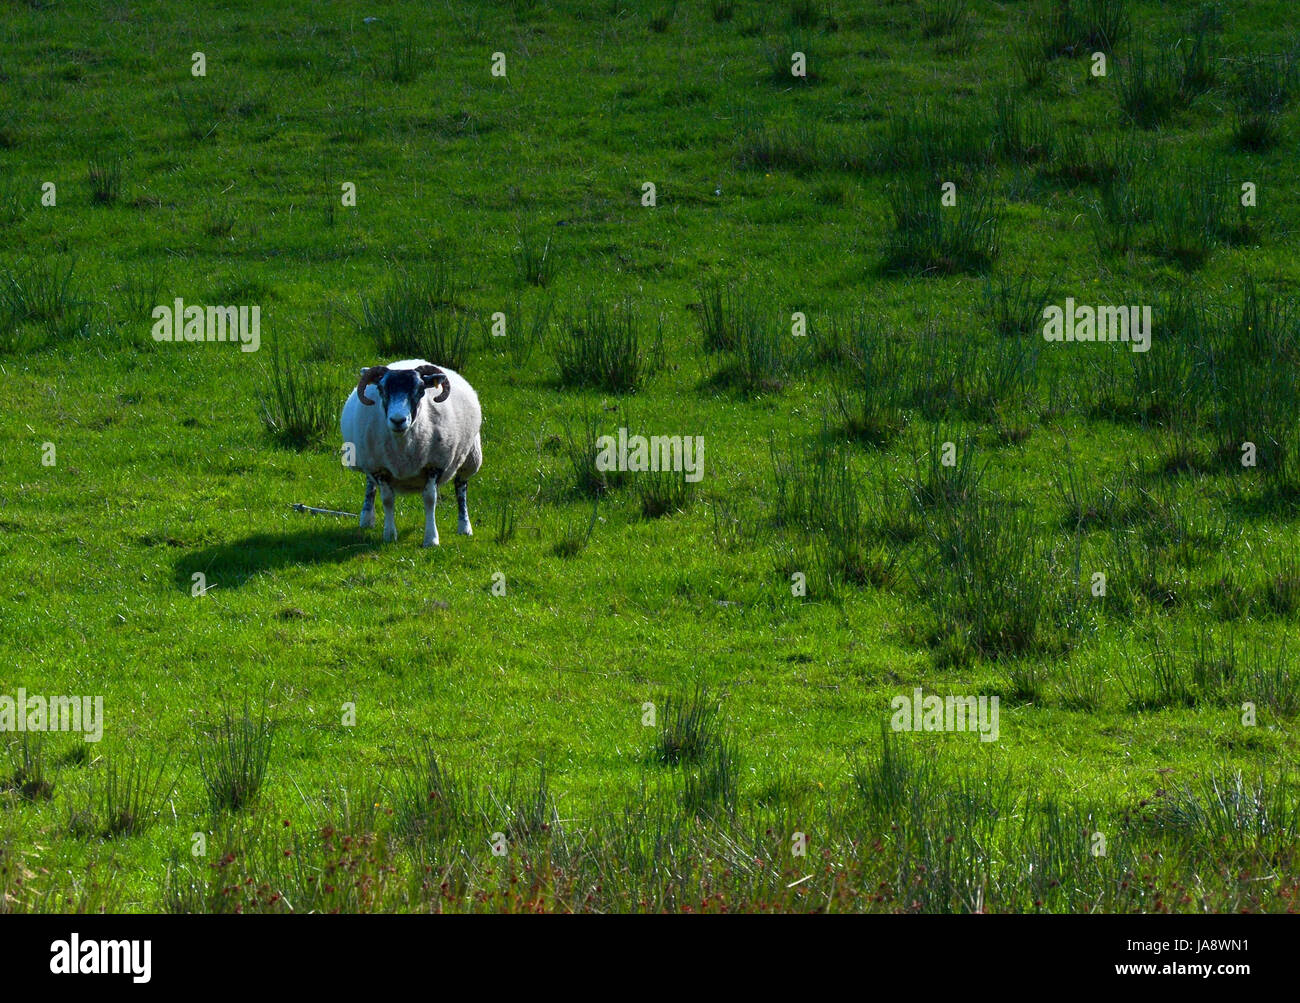 sheep, scotland, nature, sheep, scotland, nature, highlands, glen clova, Stock Photo